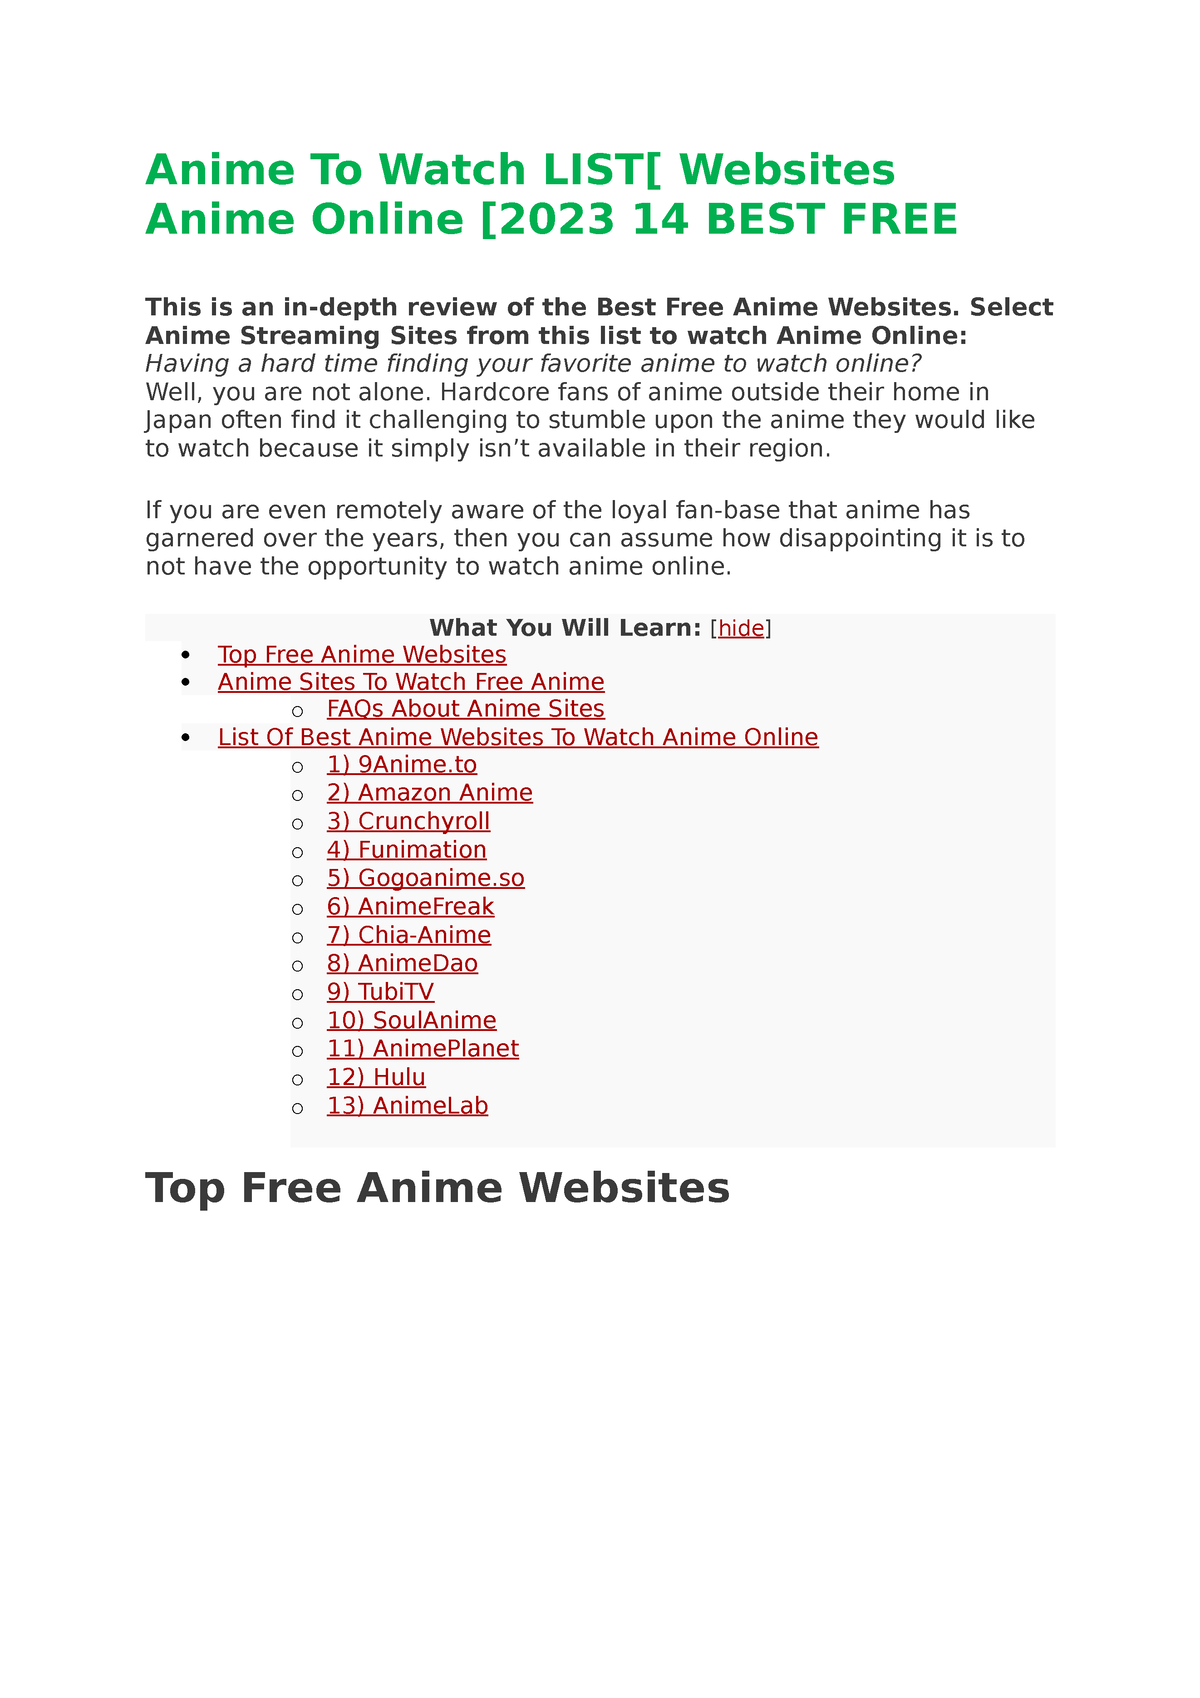 Best VPN for AnimeLab outside Australia in 2023